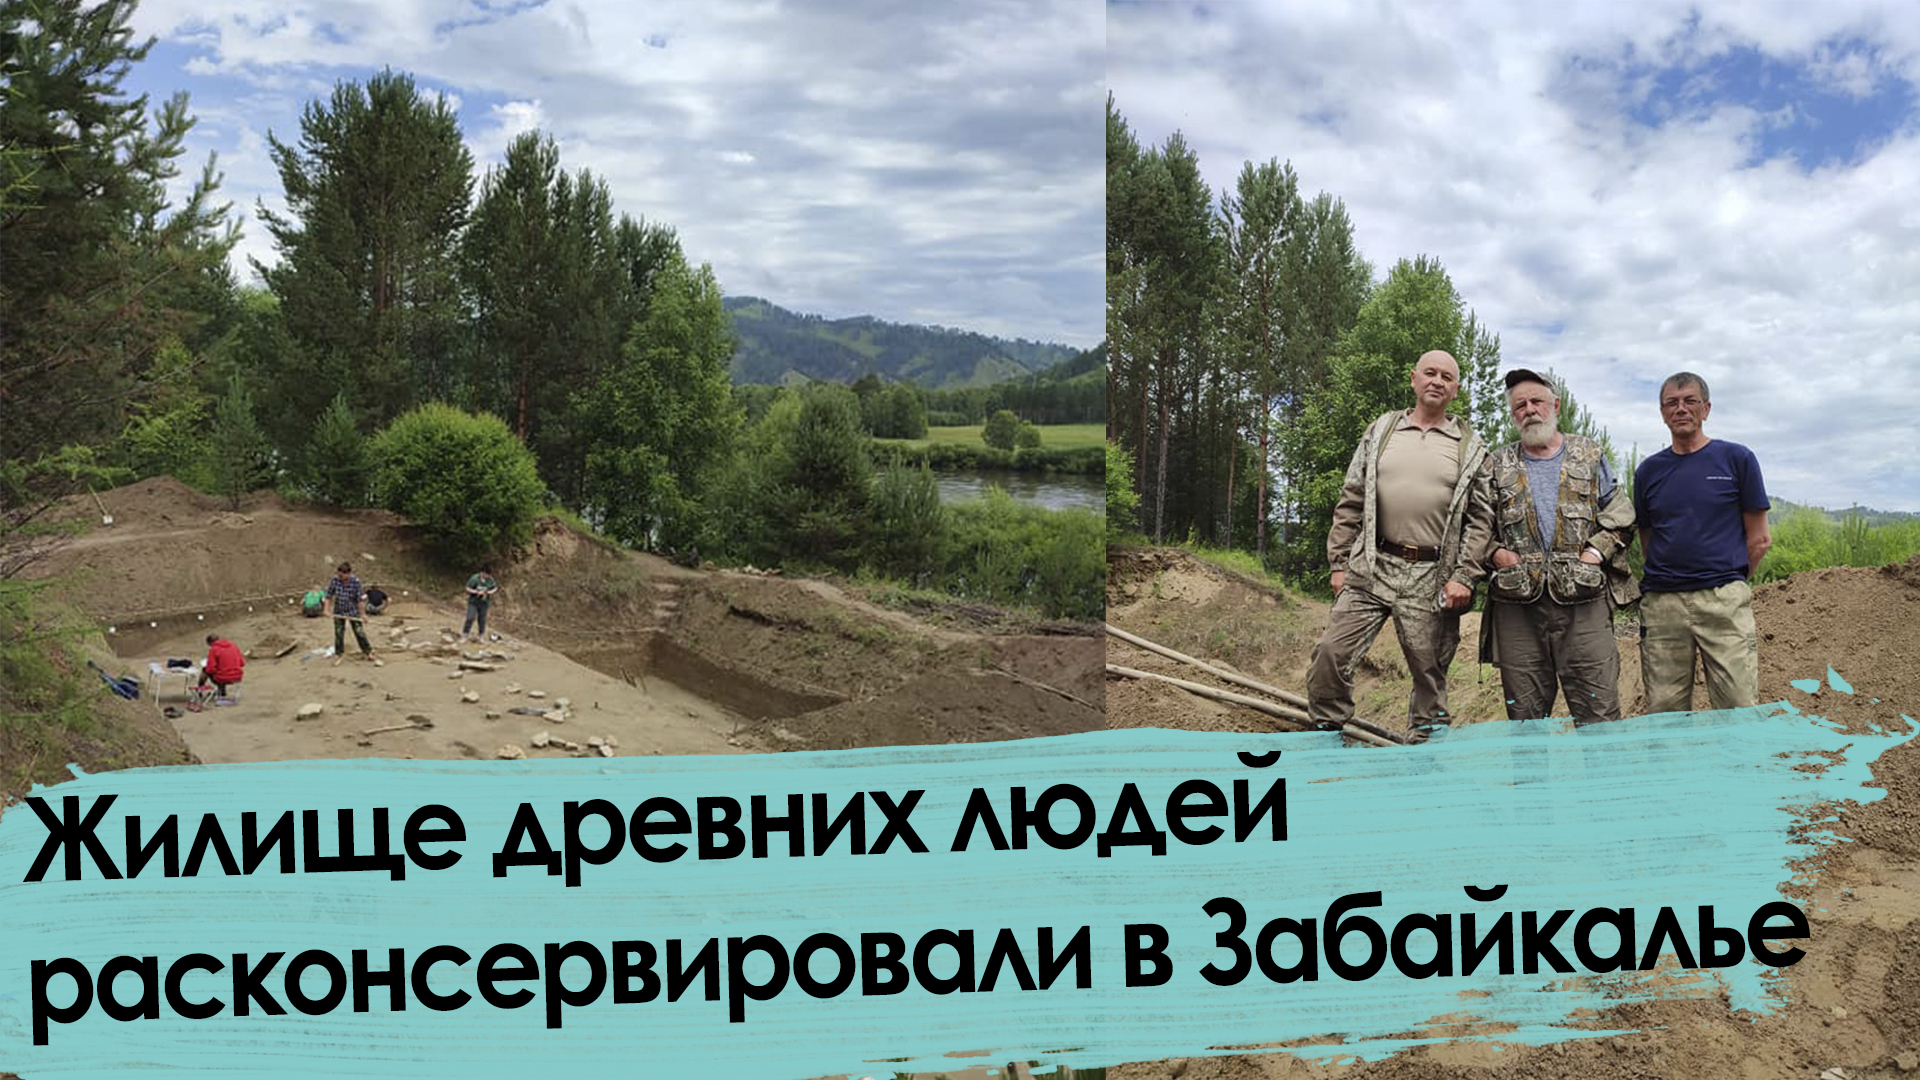 Группа археологов расконсервировала жилище древних людей в Красночикойском районе